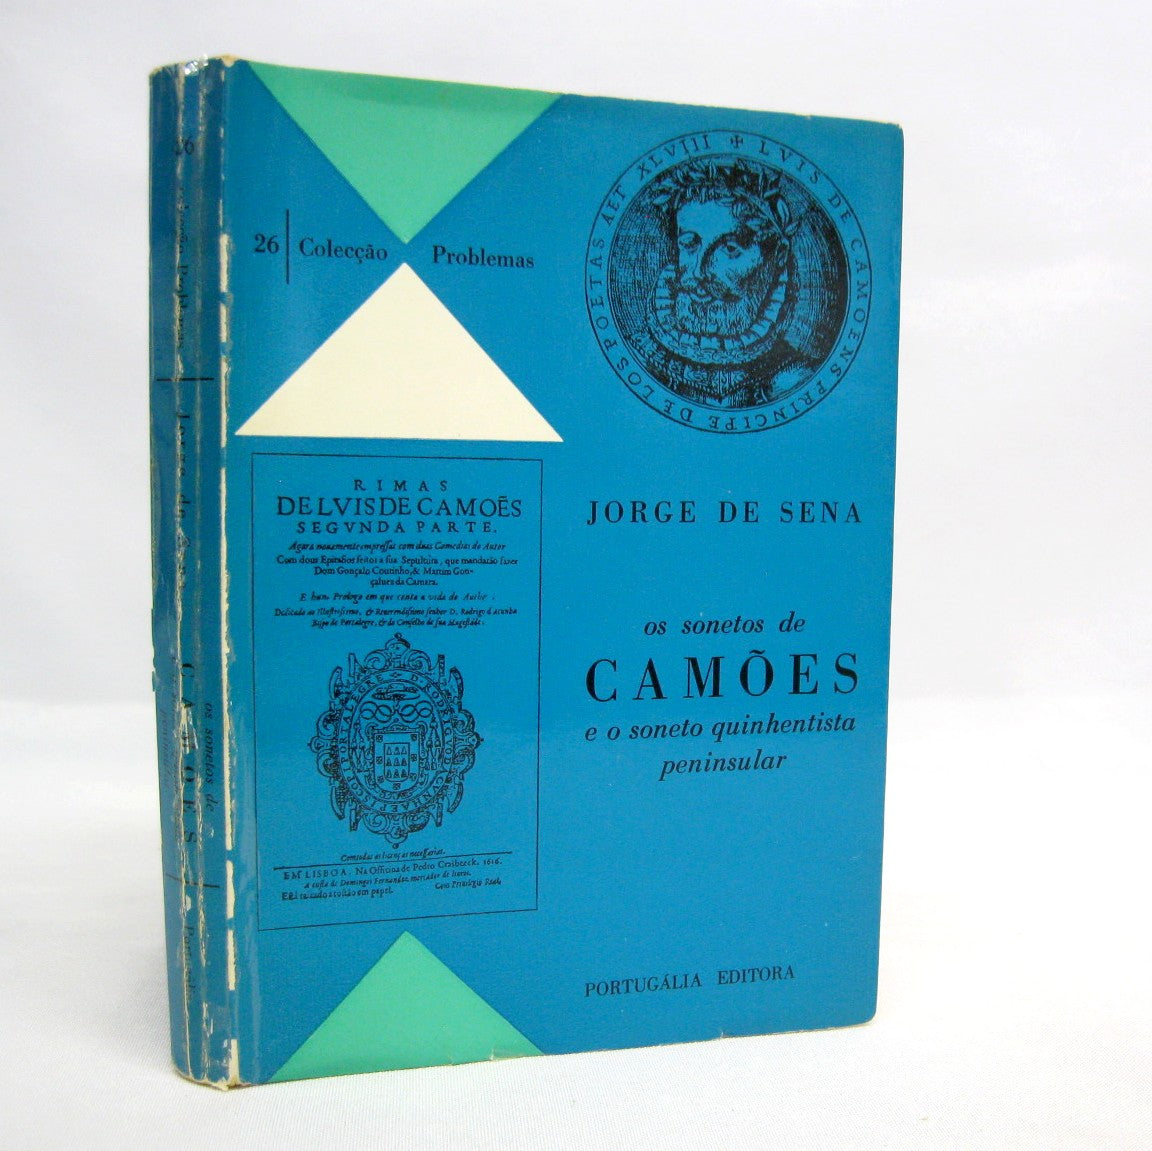 Os Sonetos de Camoes by Jorge de Sena